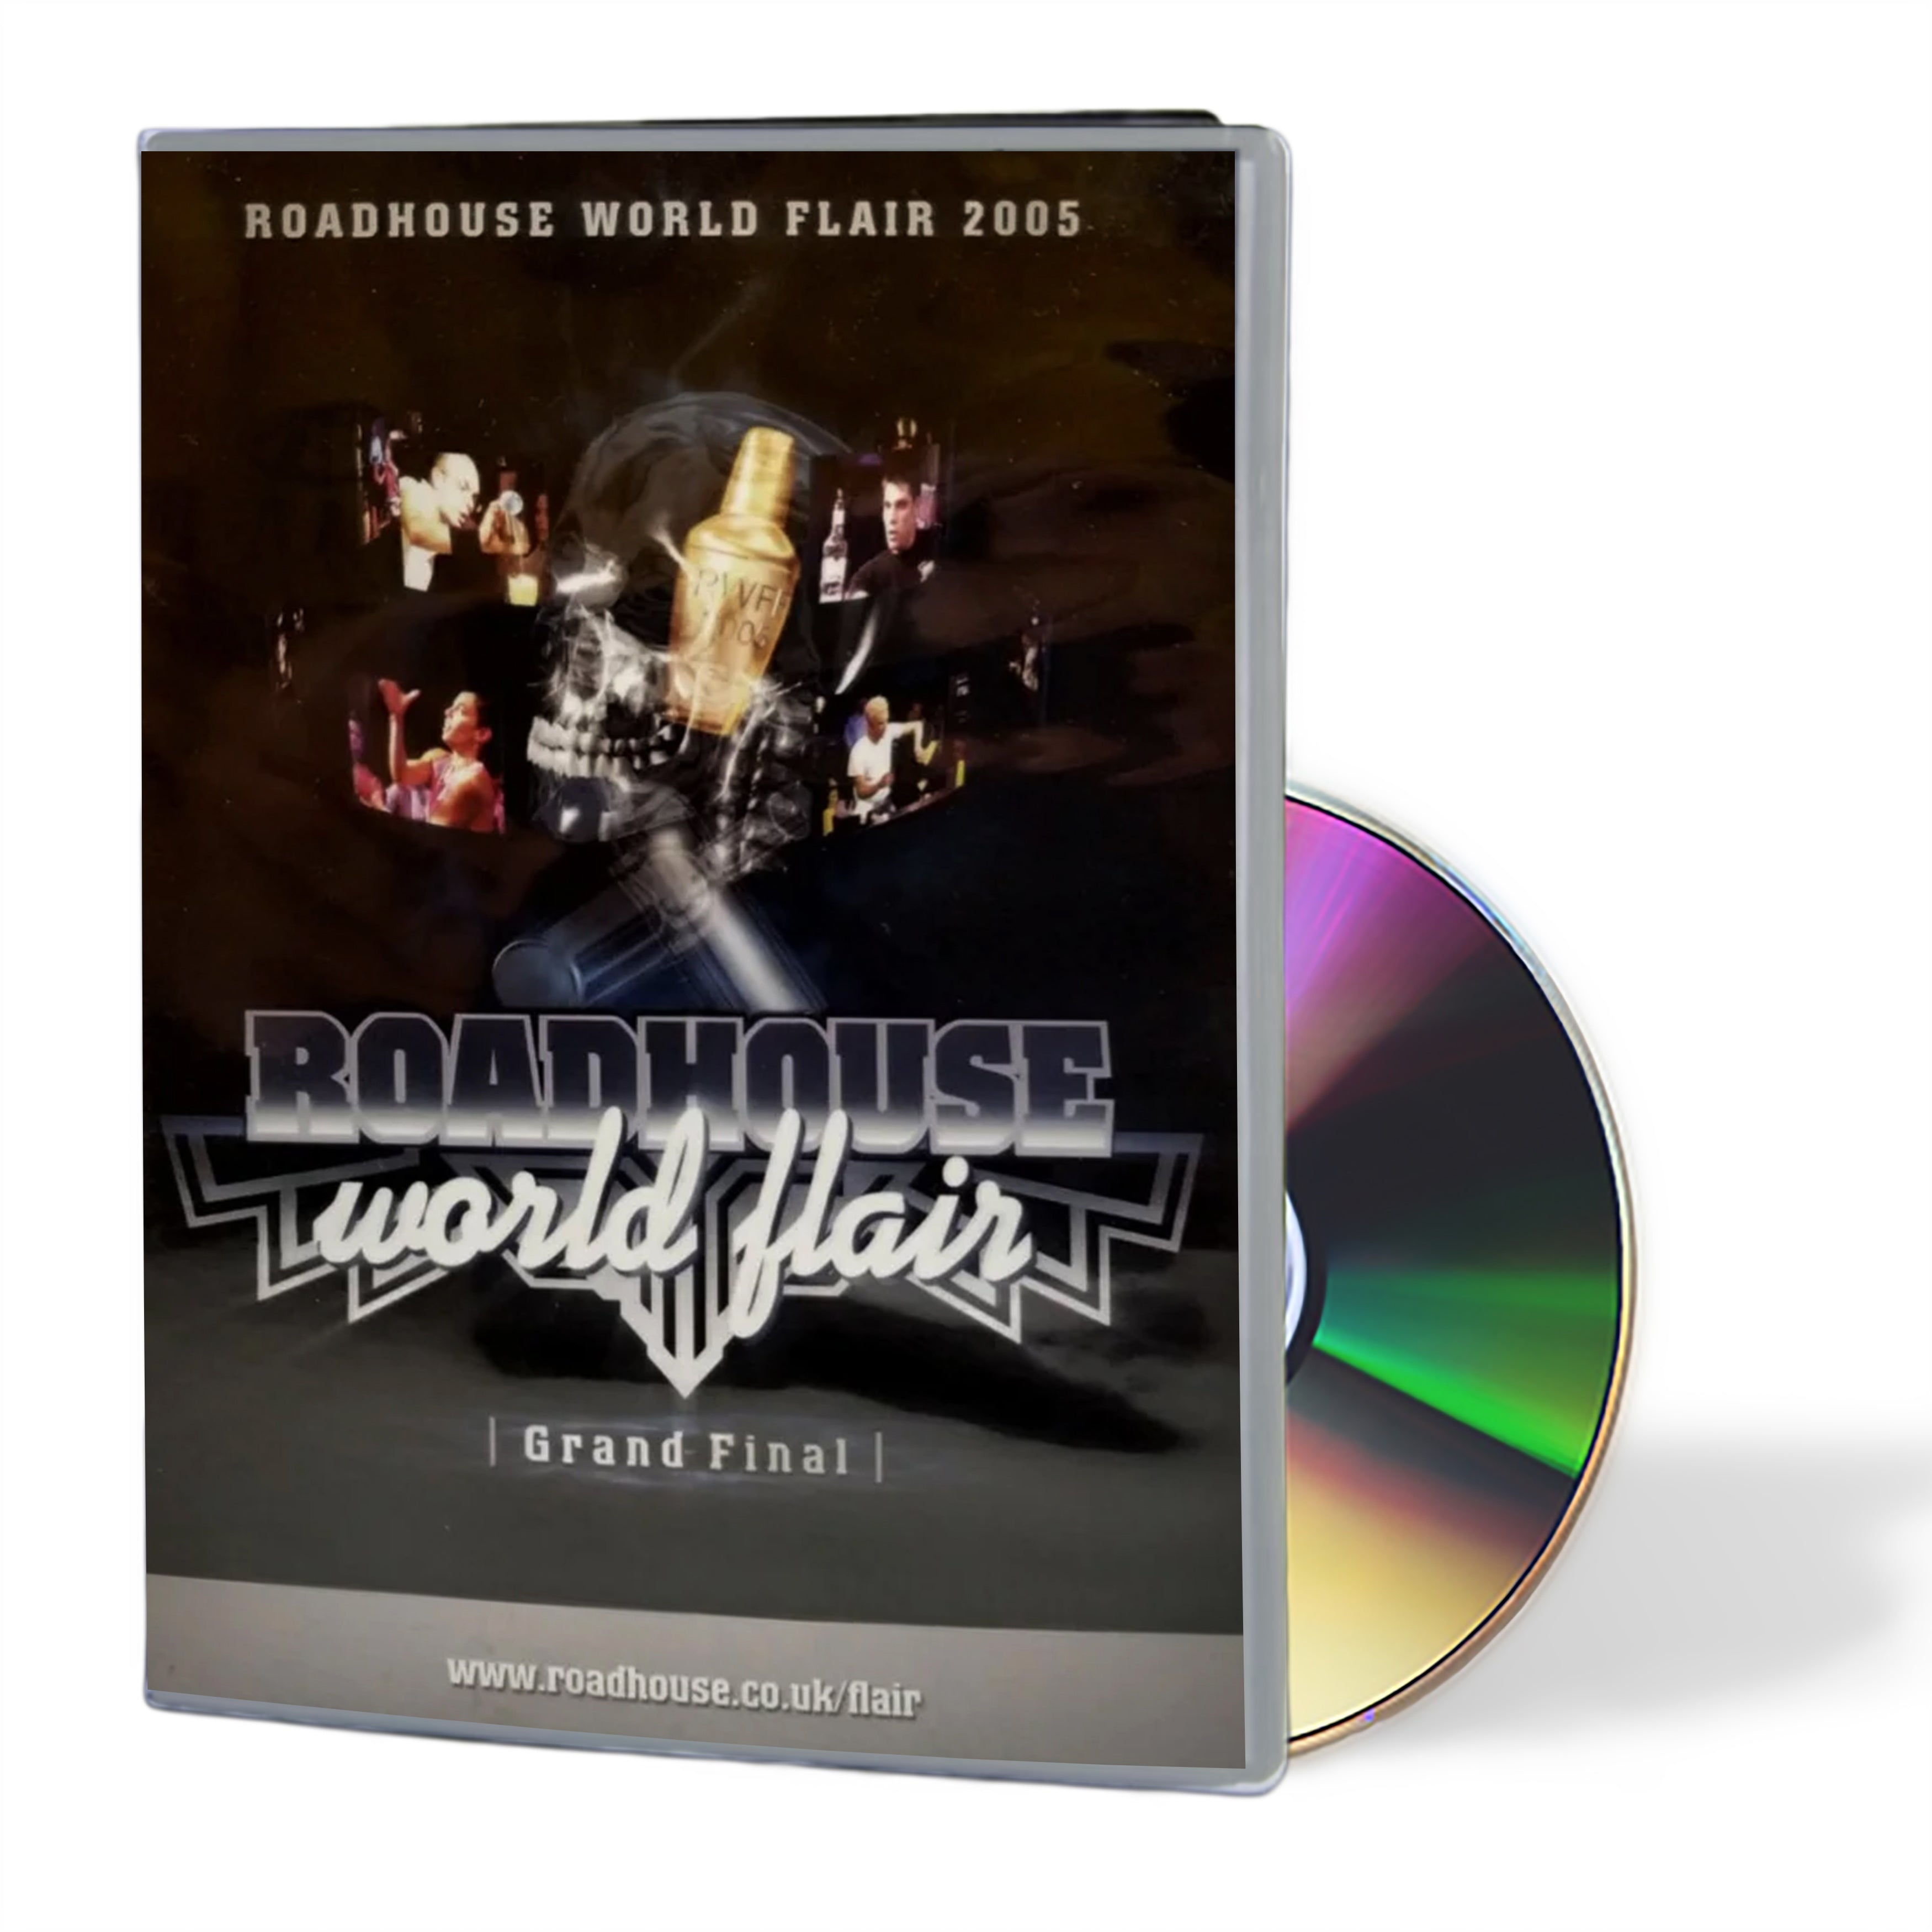 Roadhouse World Flair Grand Final 2005 DVD